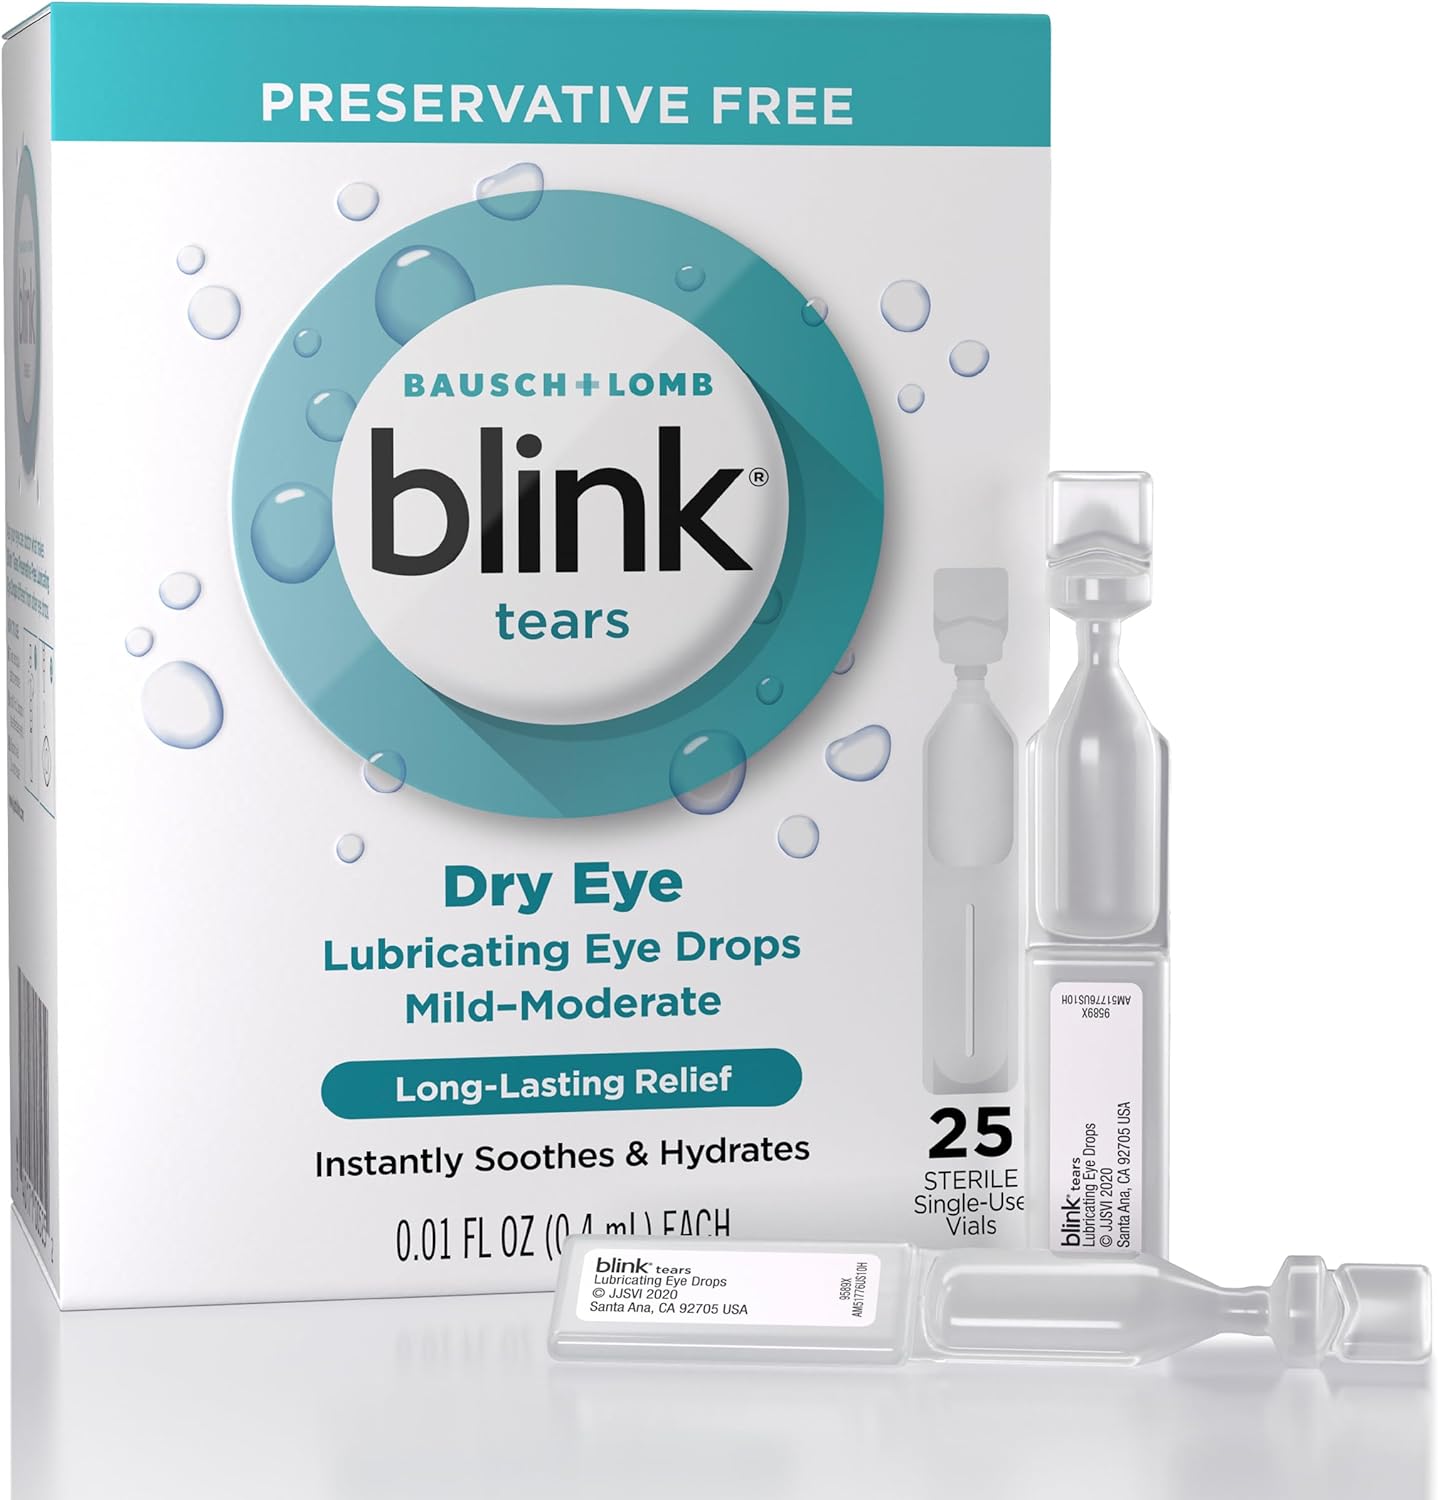 Blink Tears Eye Drops for Dry Eyes, Preservative Free Lubricating Eye